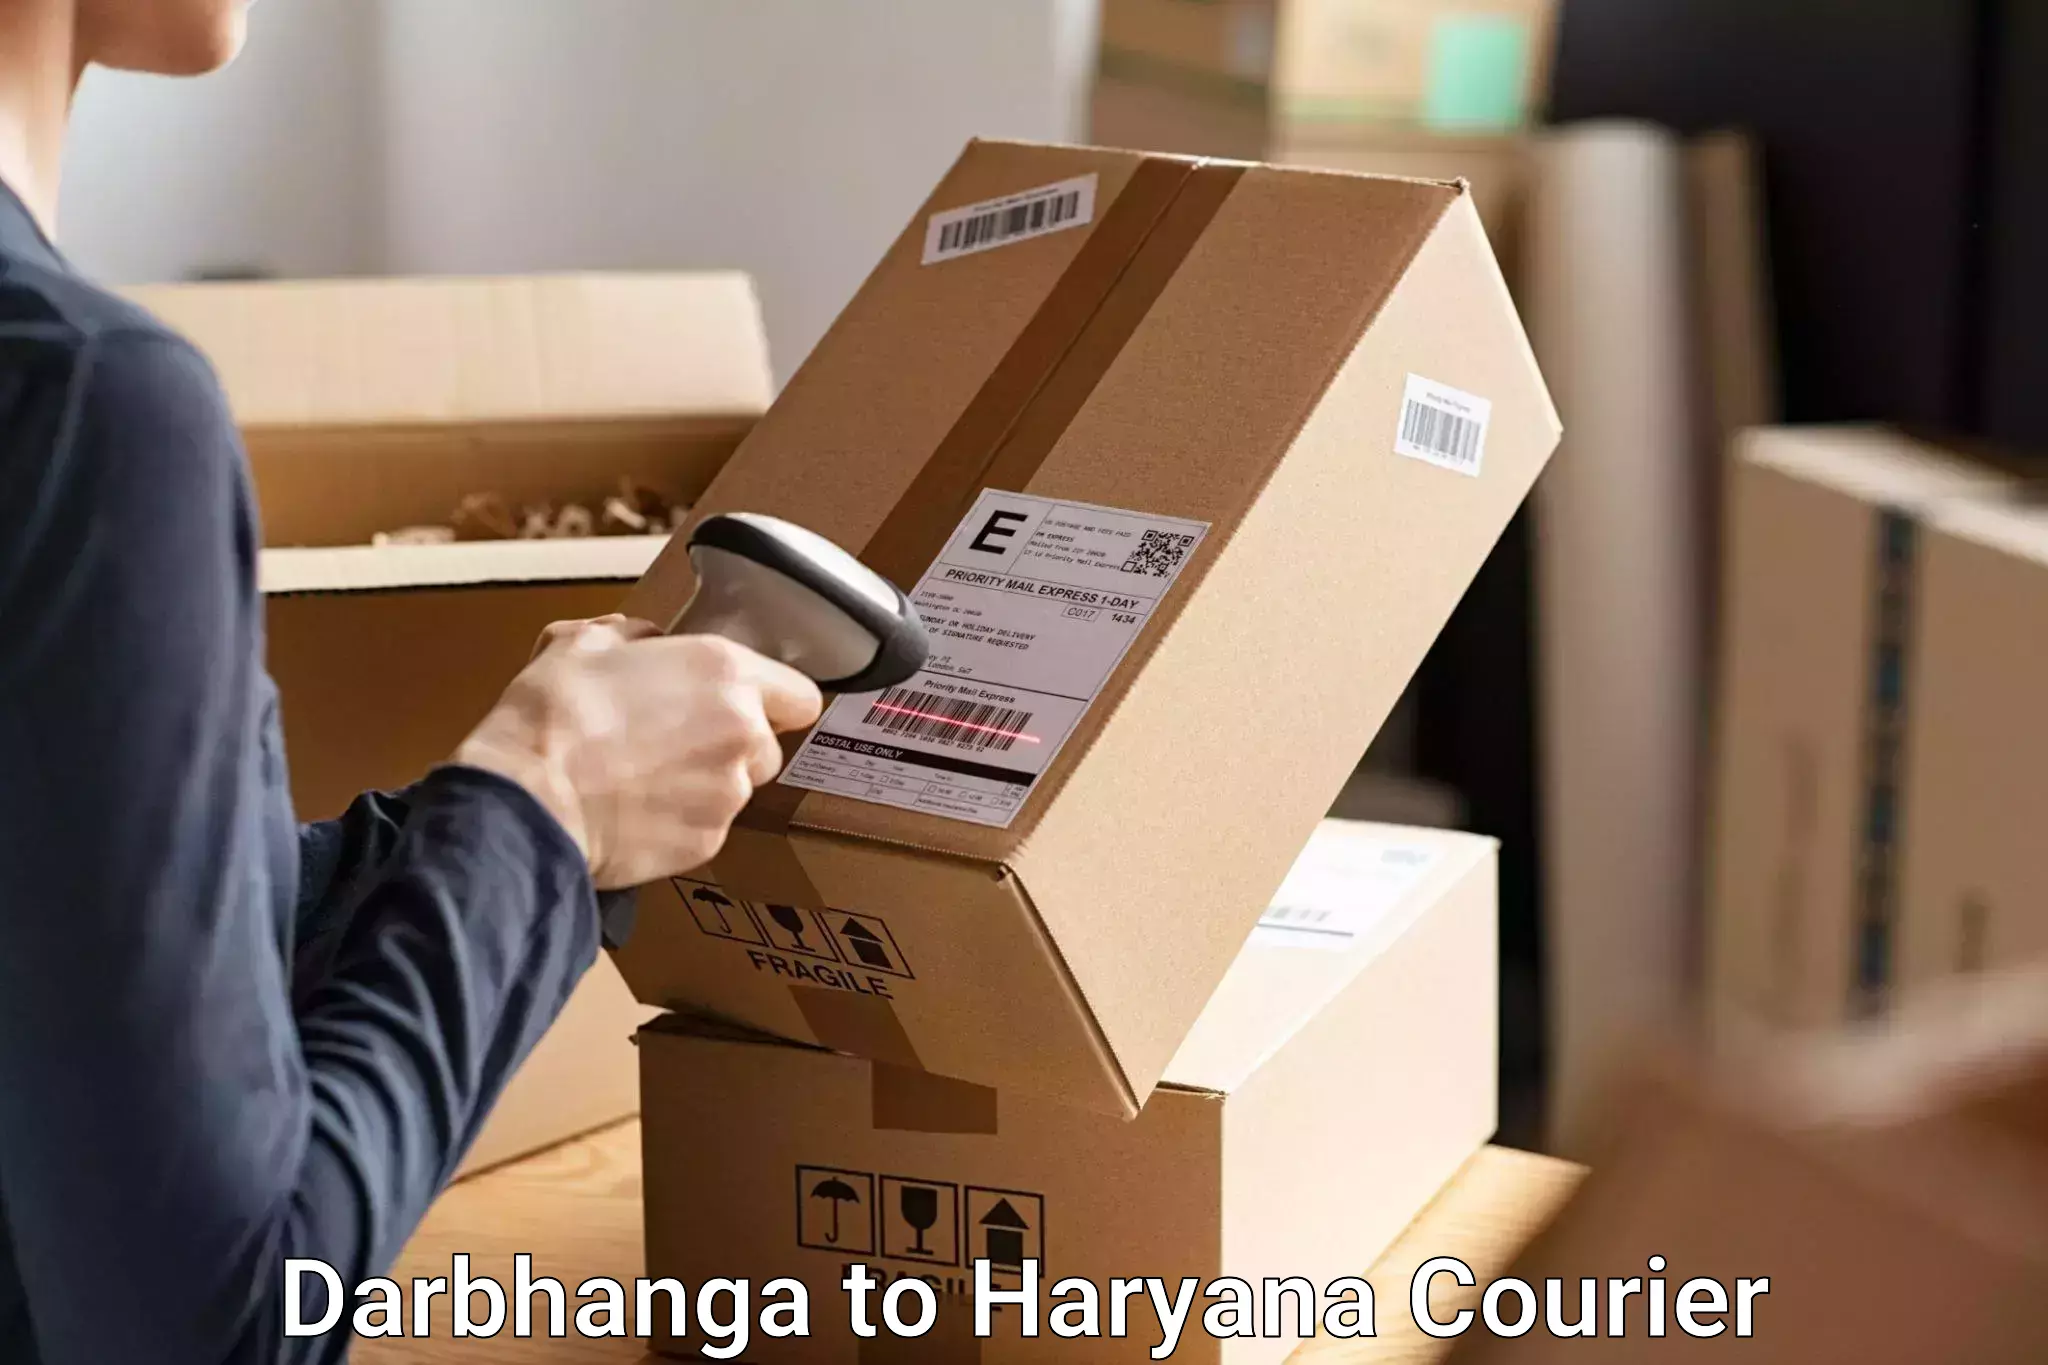 Baggage handling services Darbhanga to NCR Haryana